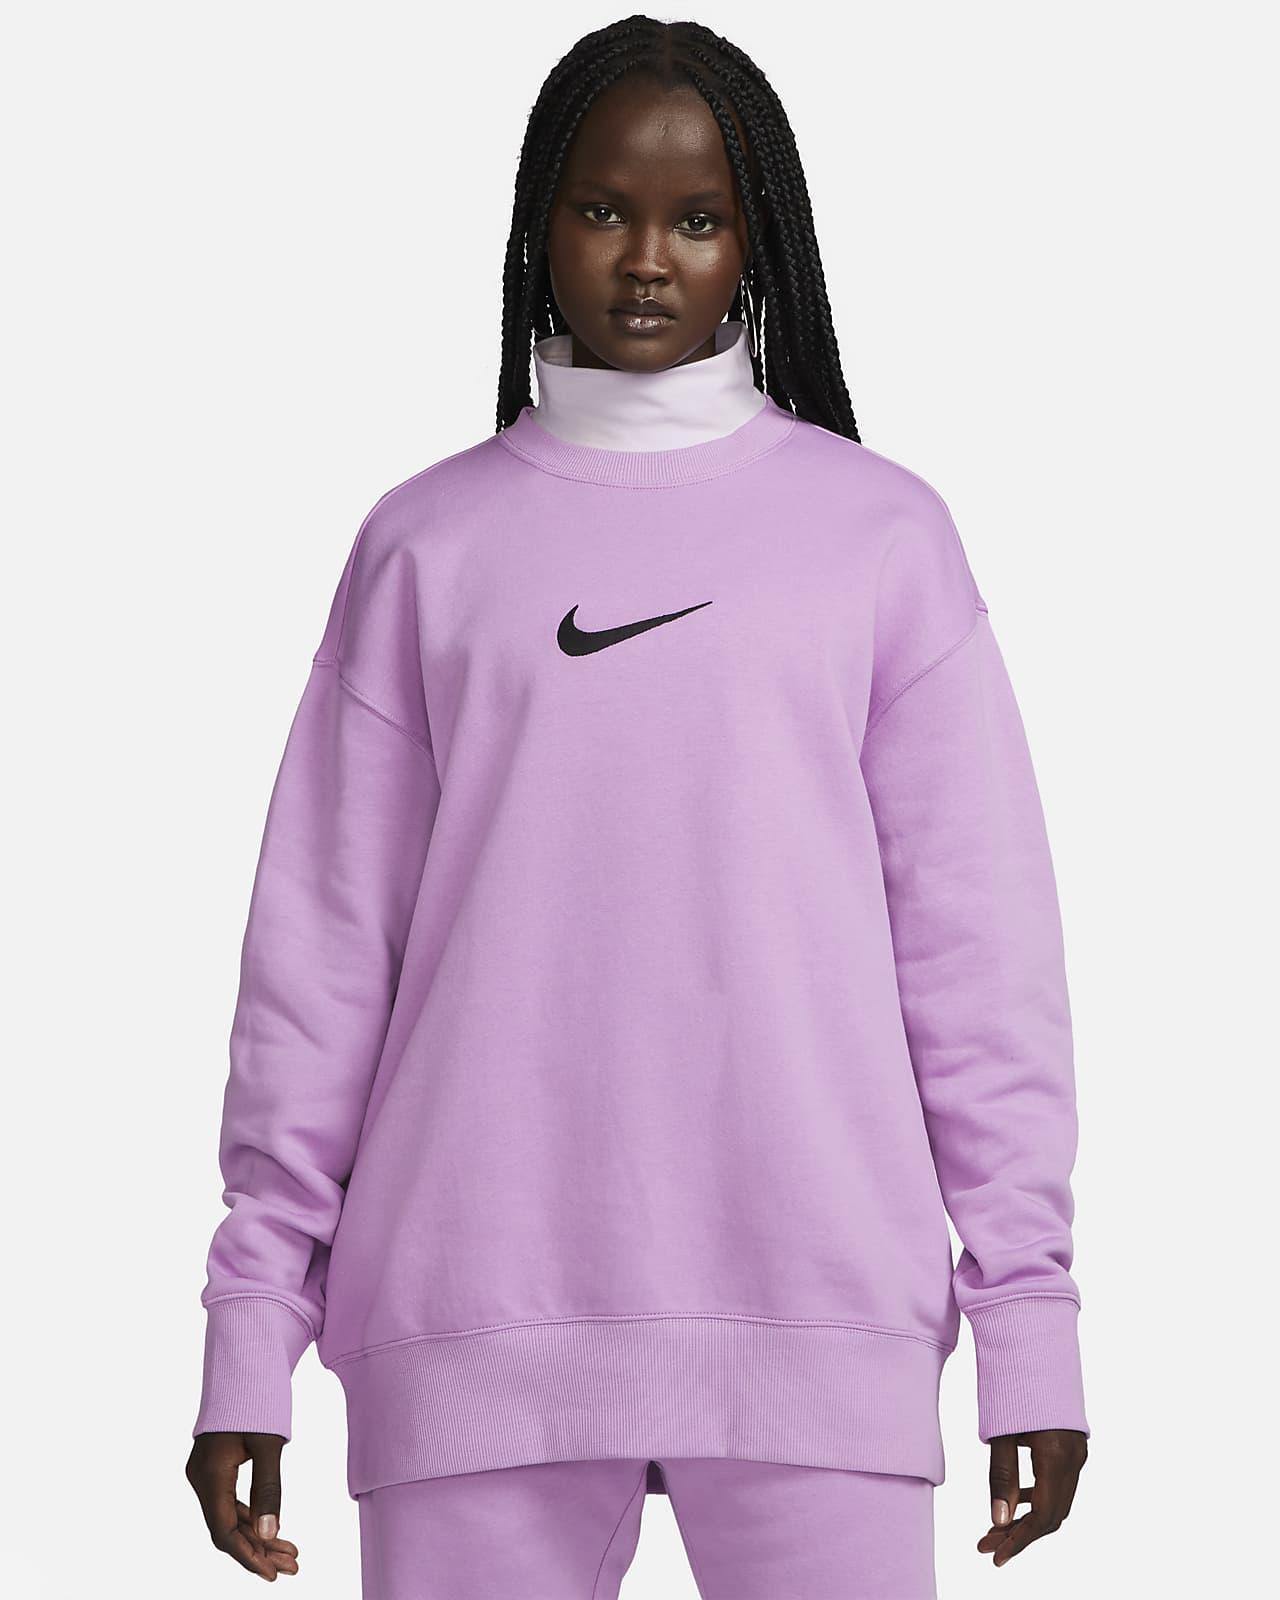 Nike Fleece Women's Oversized Fleece Sweatshirt. UK